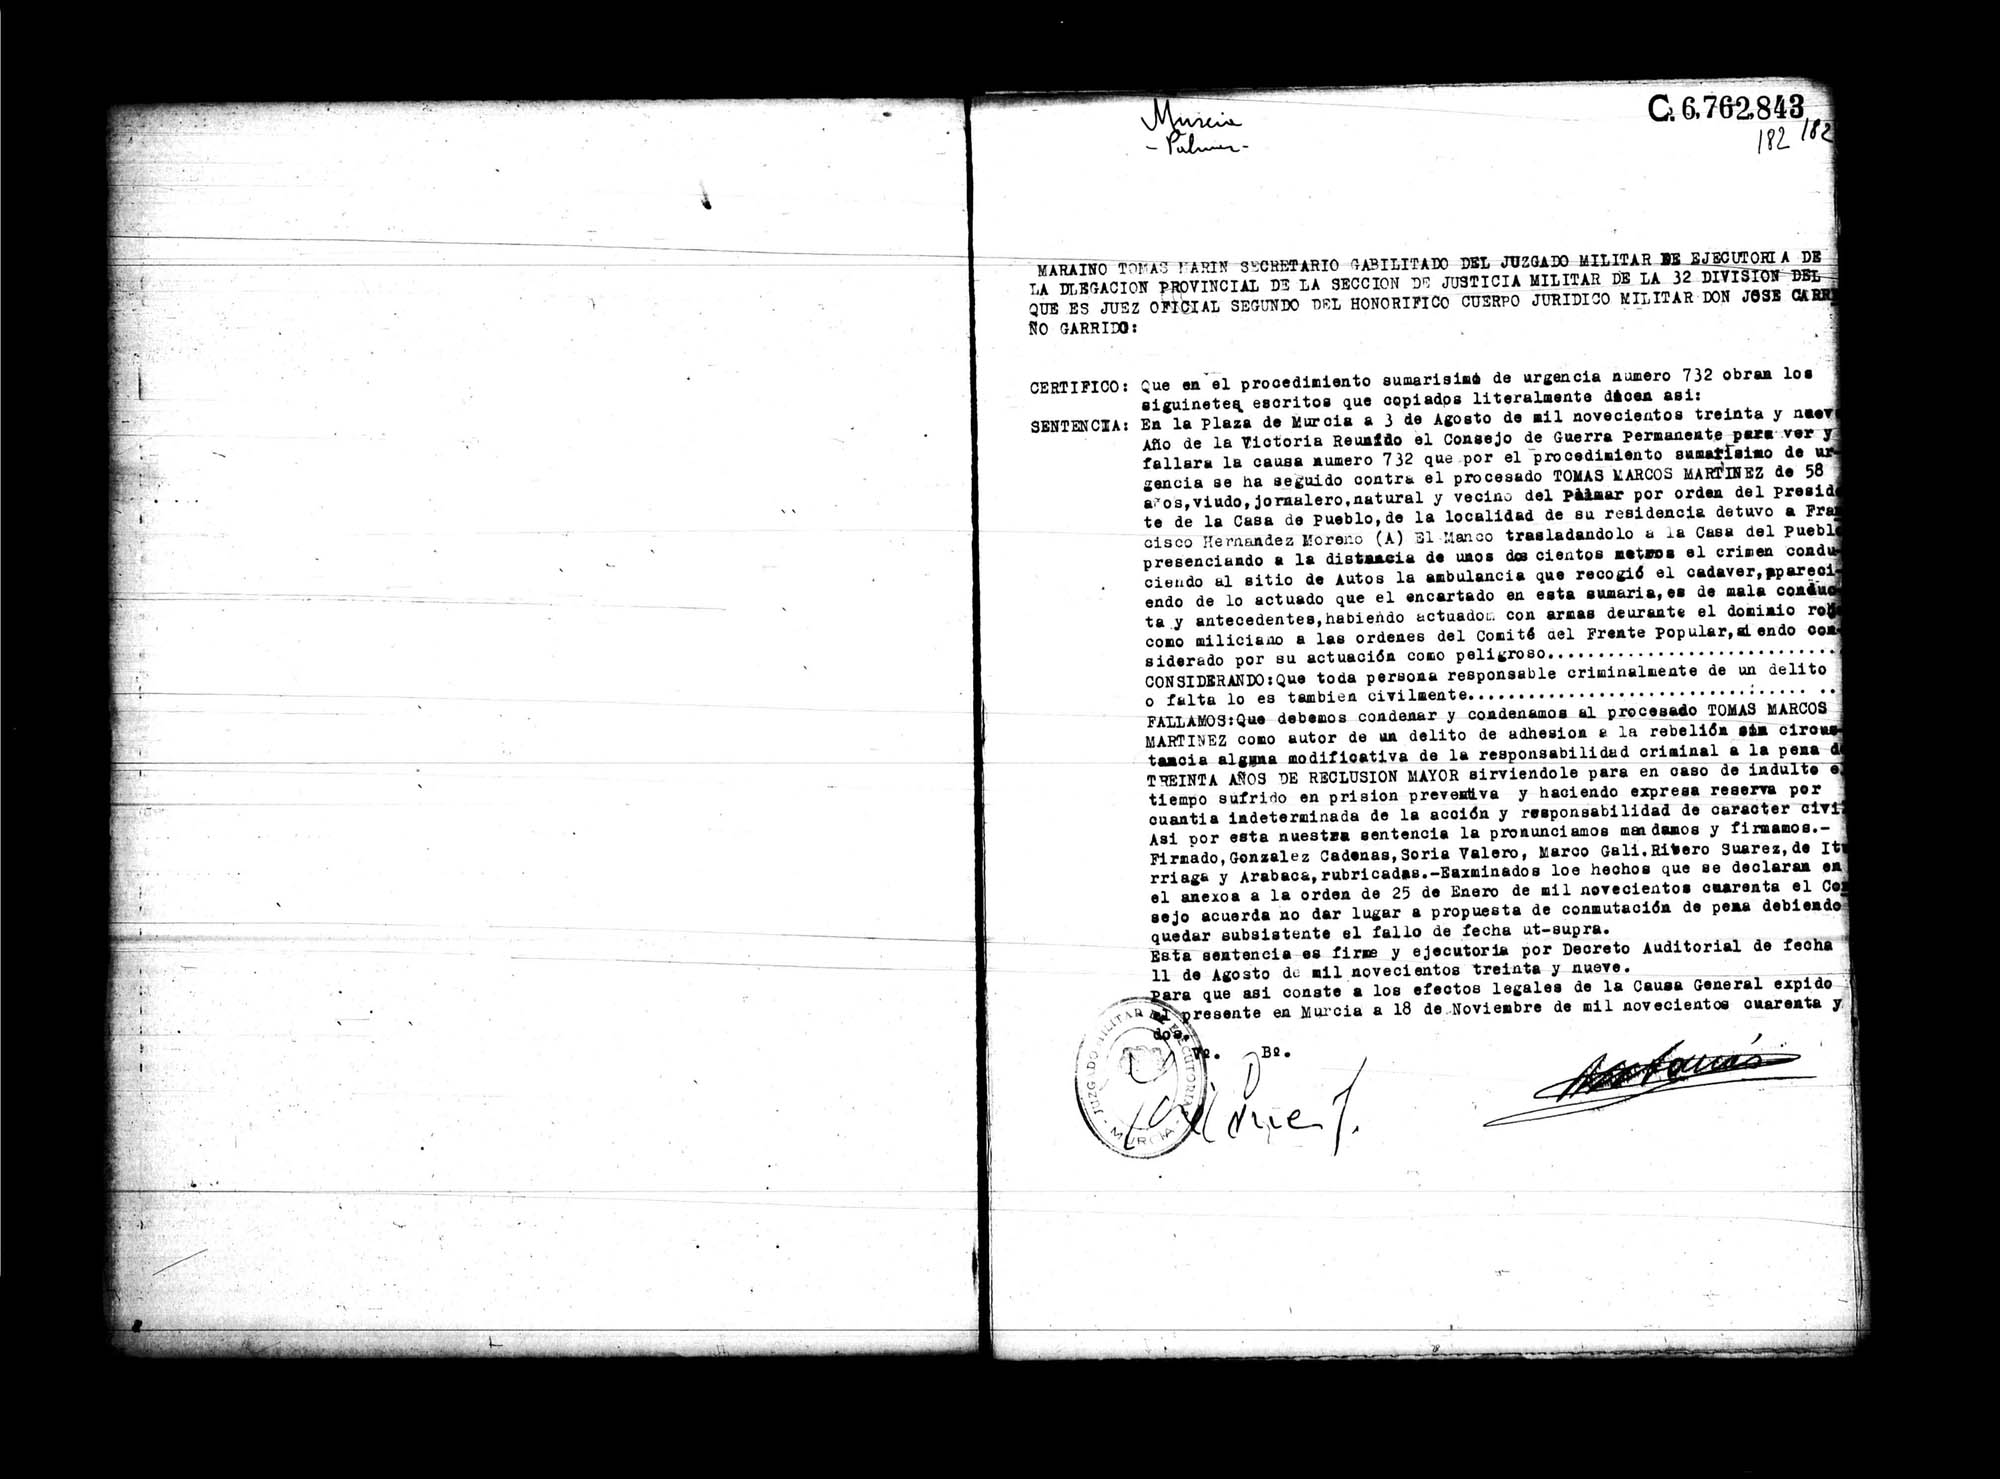 Certificado de la sentencia pronunciada contra Tomás Marcos Martínez, causa 732, el 3 de agosto de 1939 en Murcia.